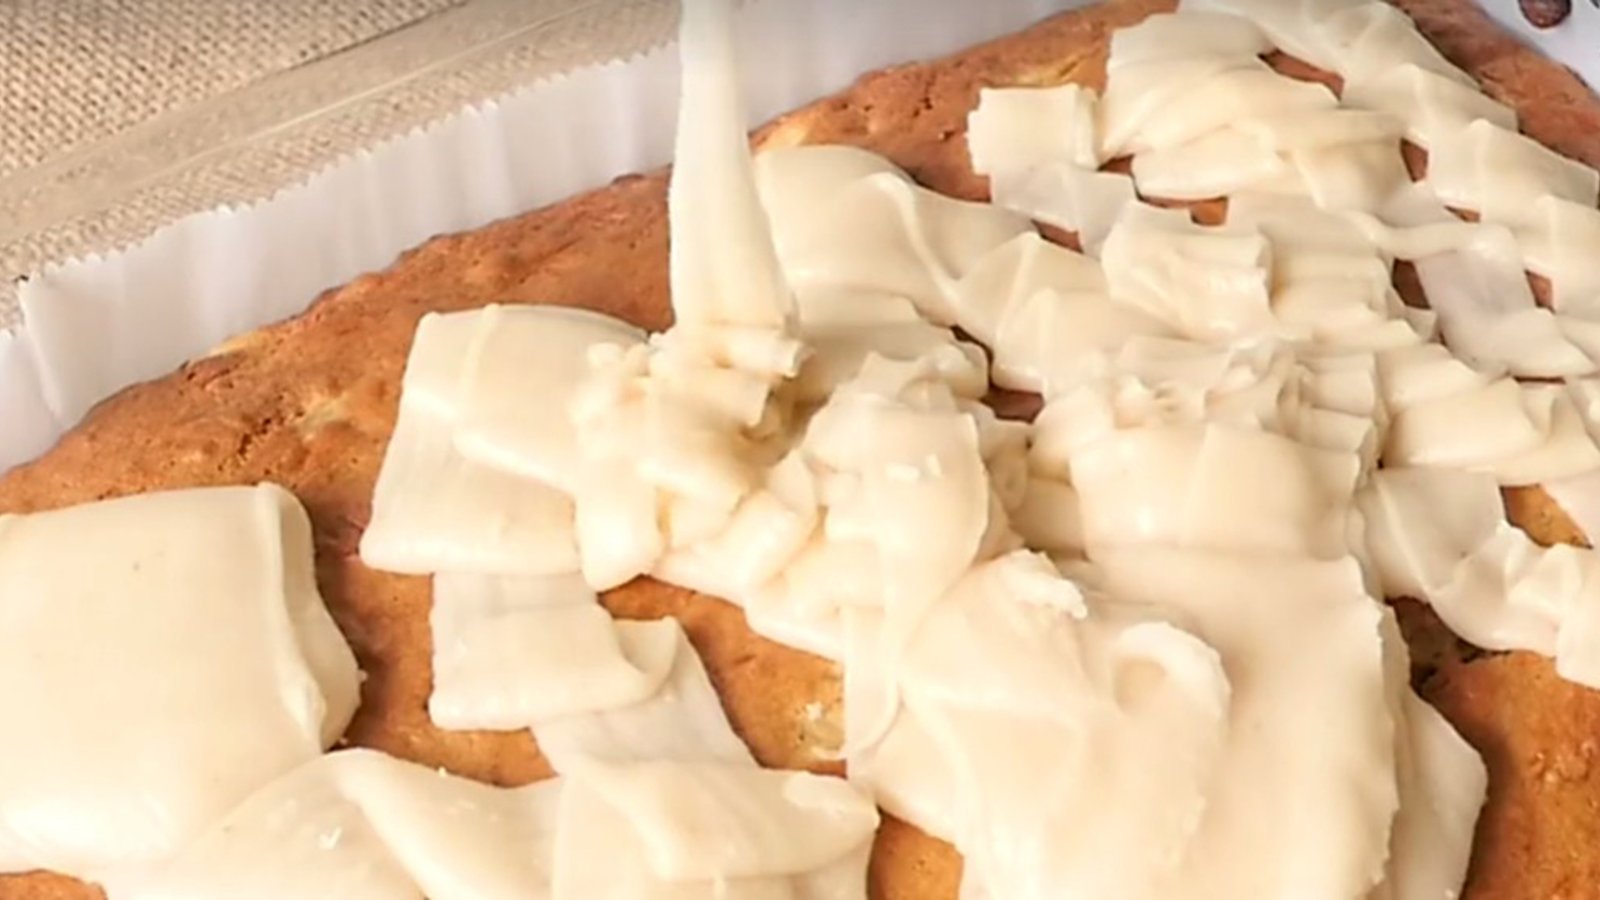 L'ultime gâteau aux bananes et son glaçage chaud au beurre... Mmm, il n'y a pas de meilleure façon de faire!